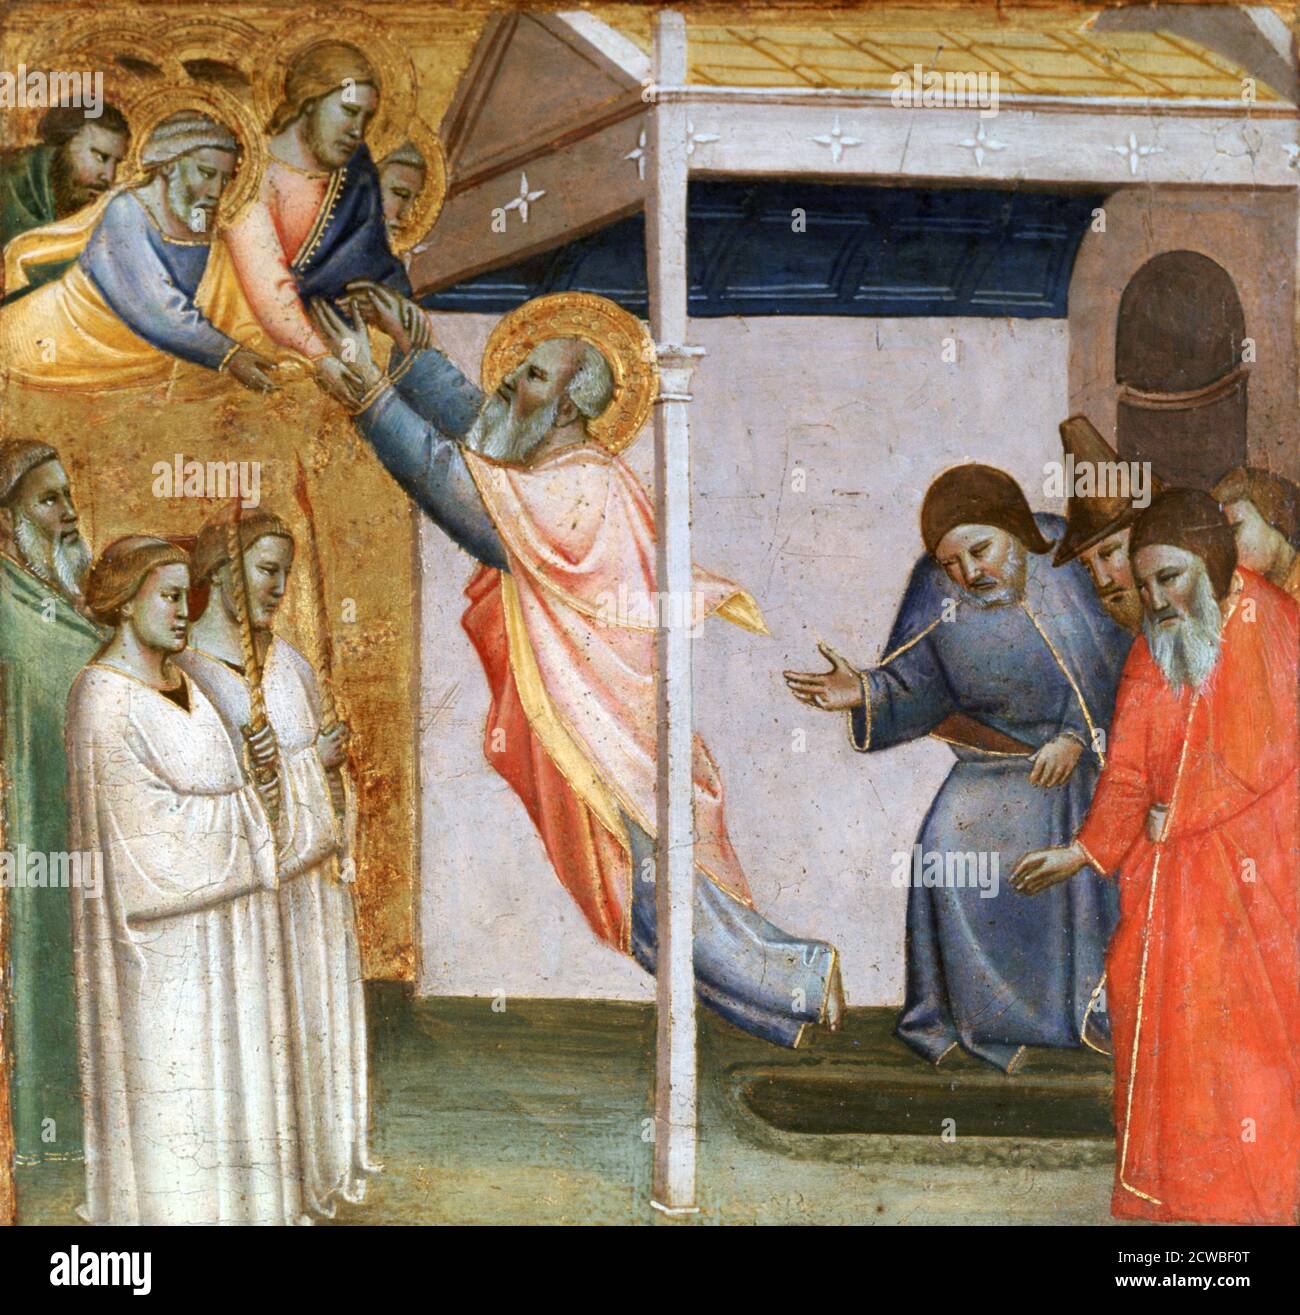 Scène de la vie de Saint-Jean, c1320-1366. Artiste: Taddeo Gaddi. Taddeo Gaddi (1290-1366) est un peintre et architecte italien médiéval. Banque D'Images